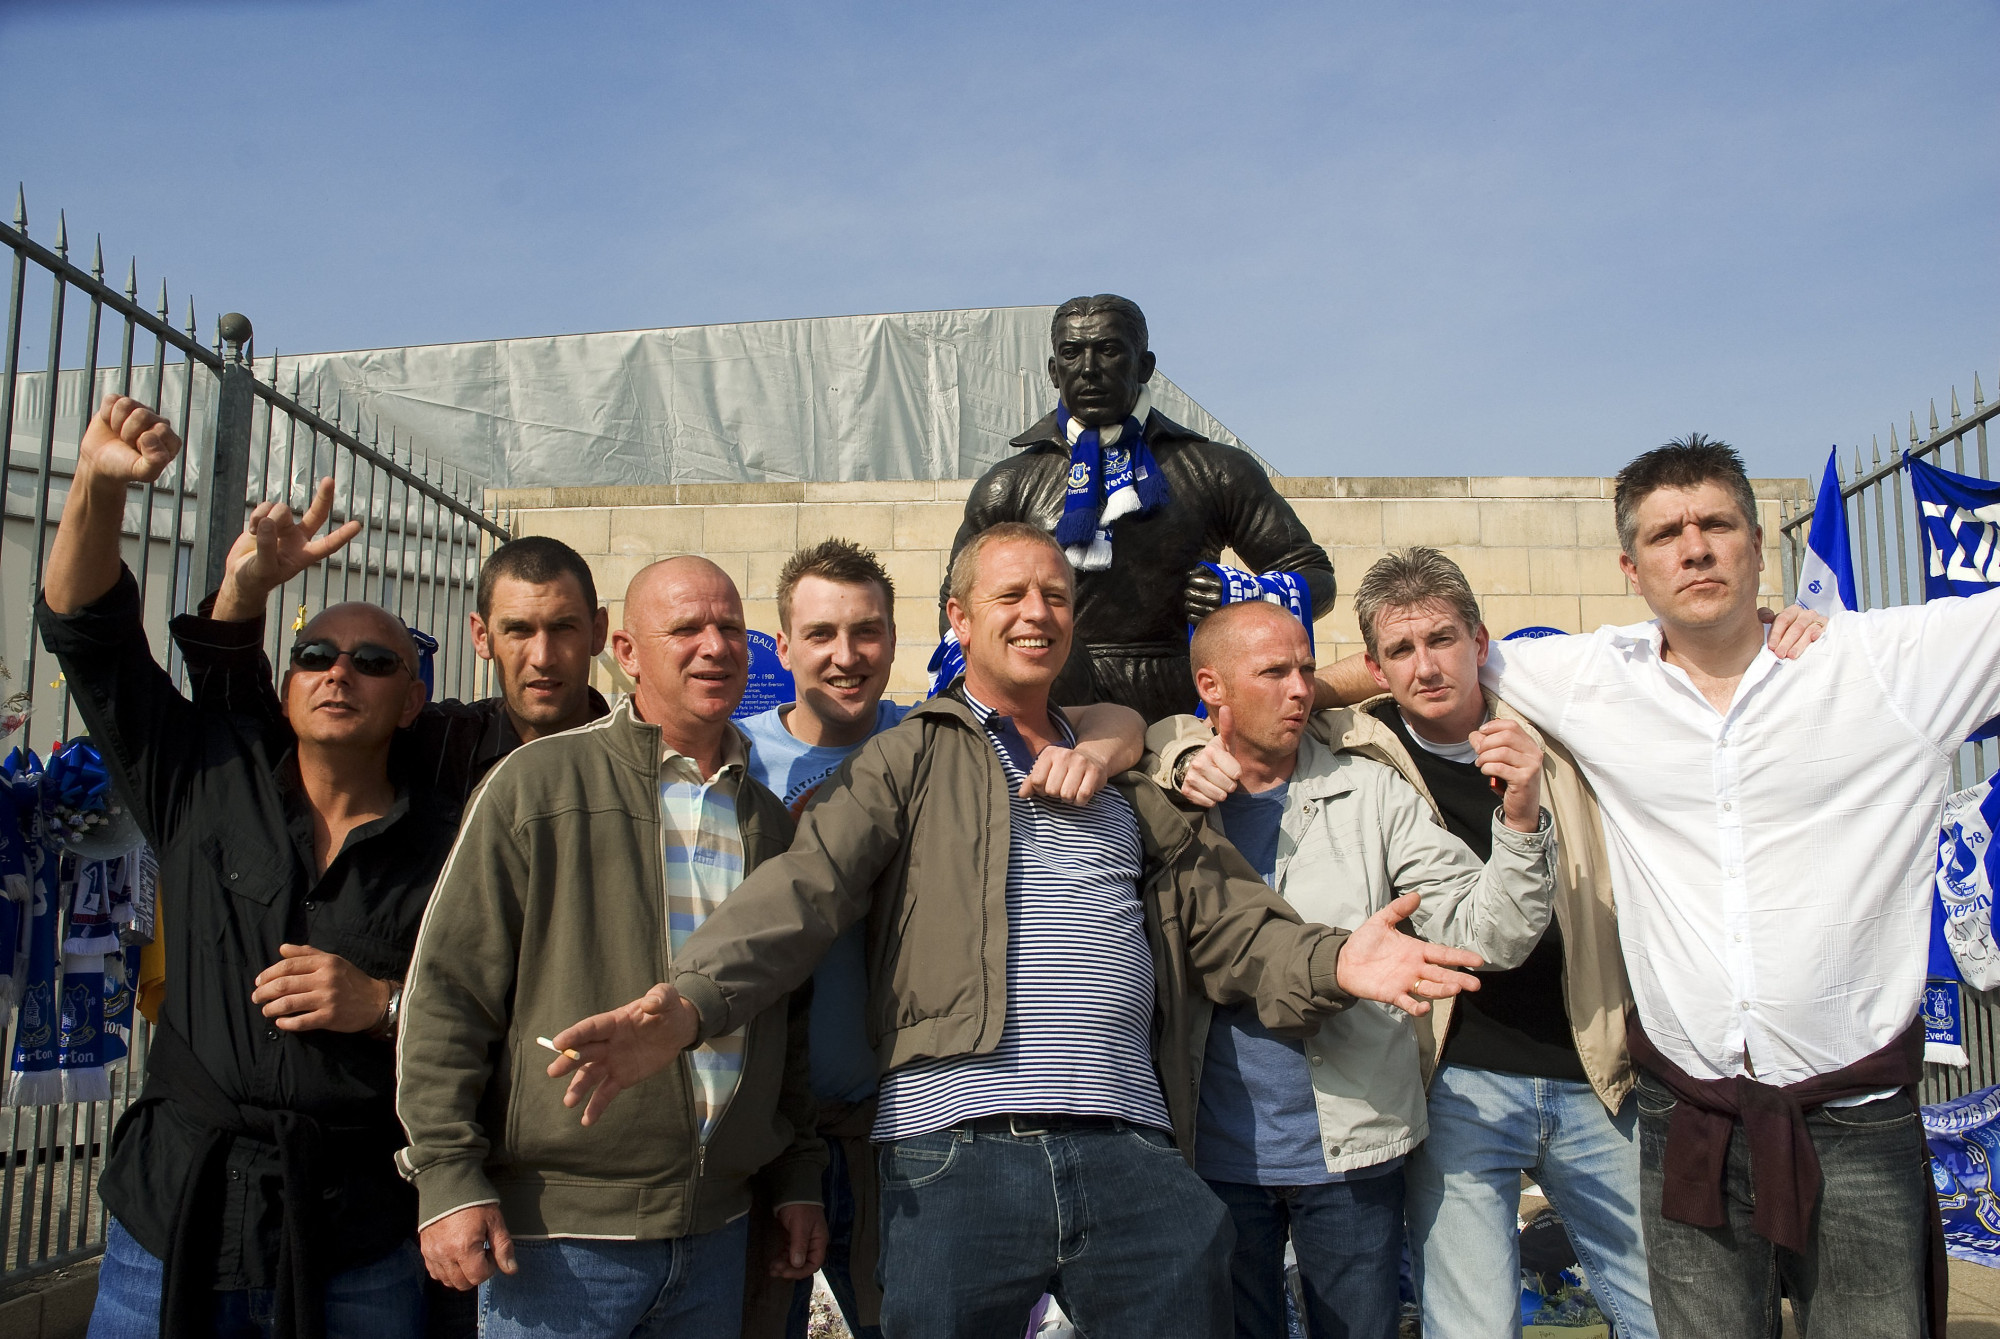 Dixie Dean szobra a Goodison előtt és az Everton drukkerei egy 2007-es fotón